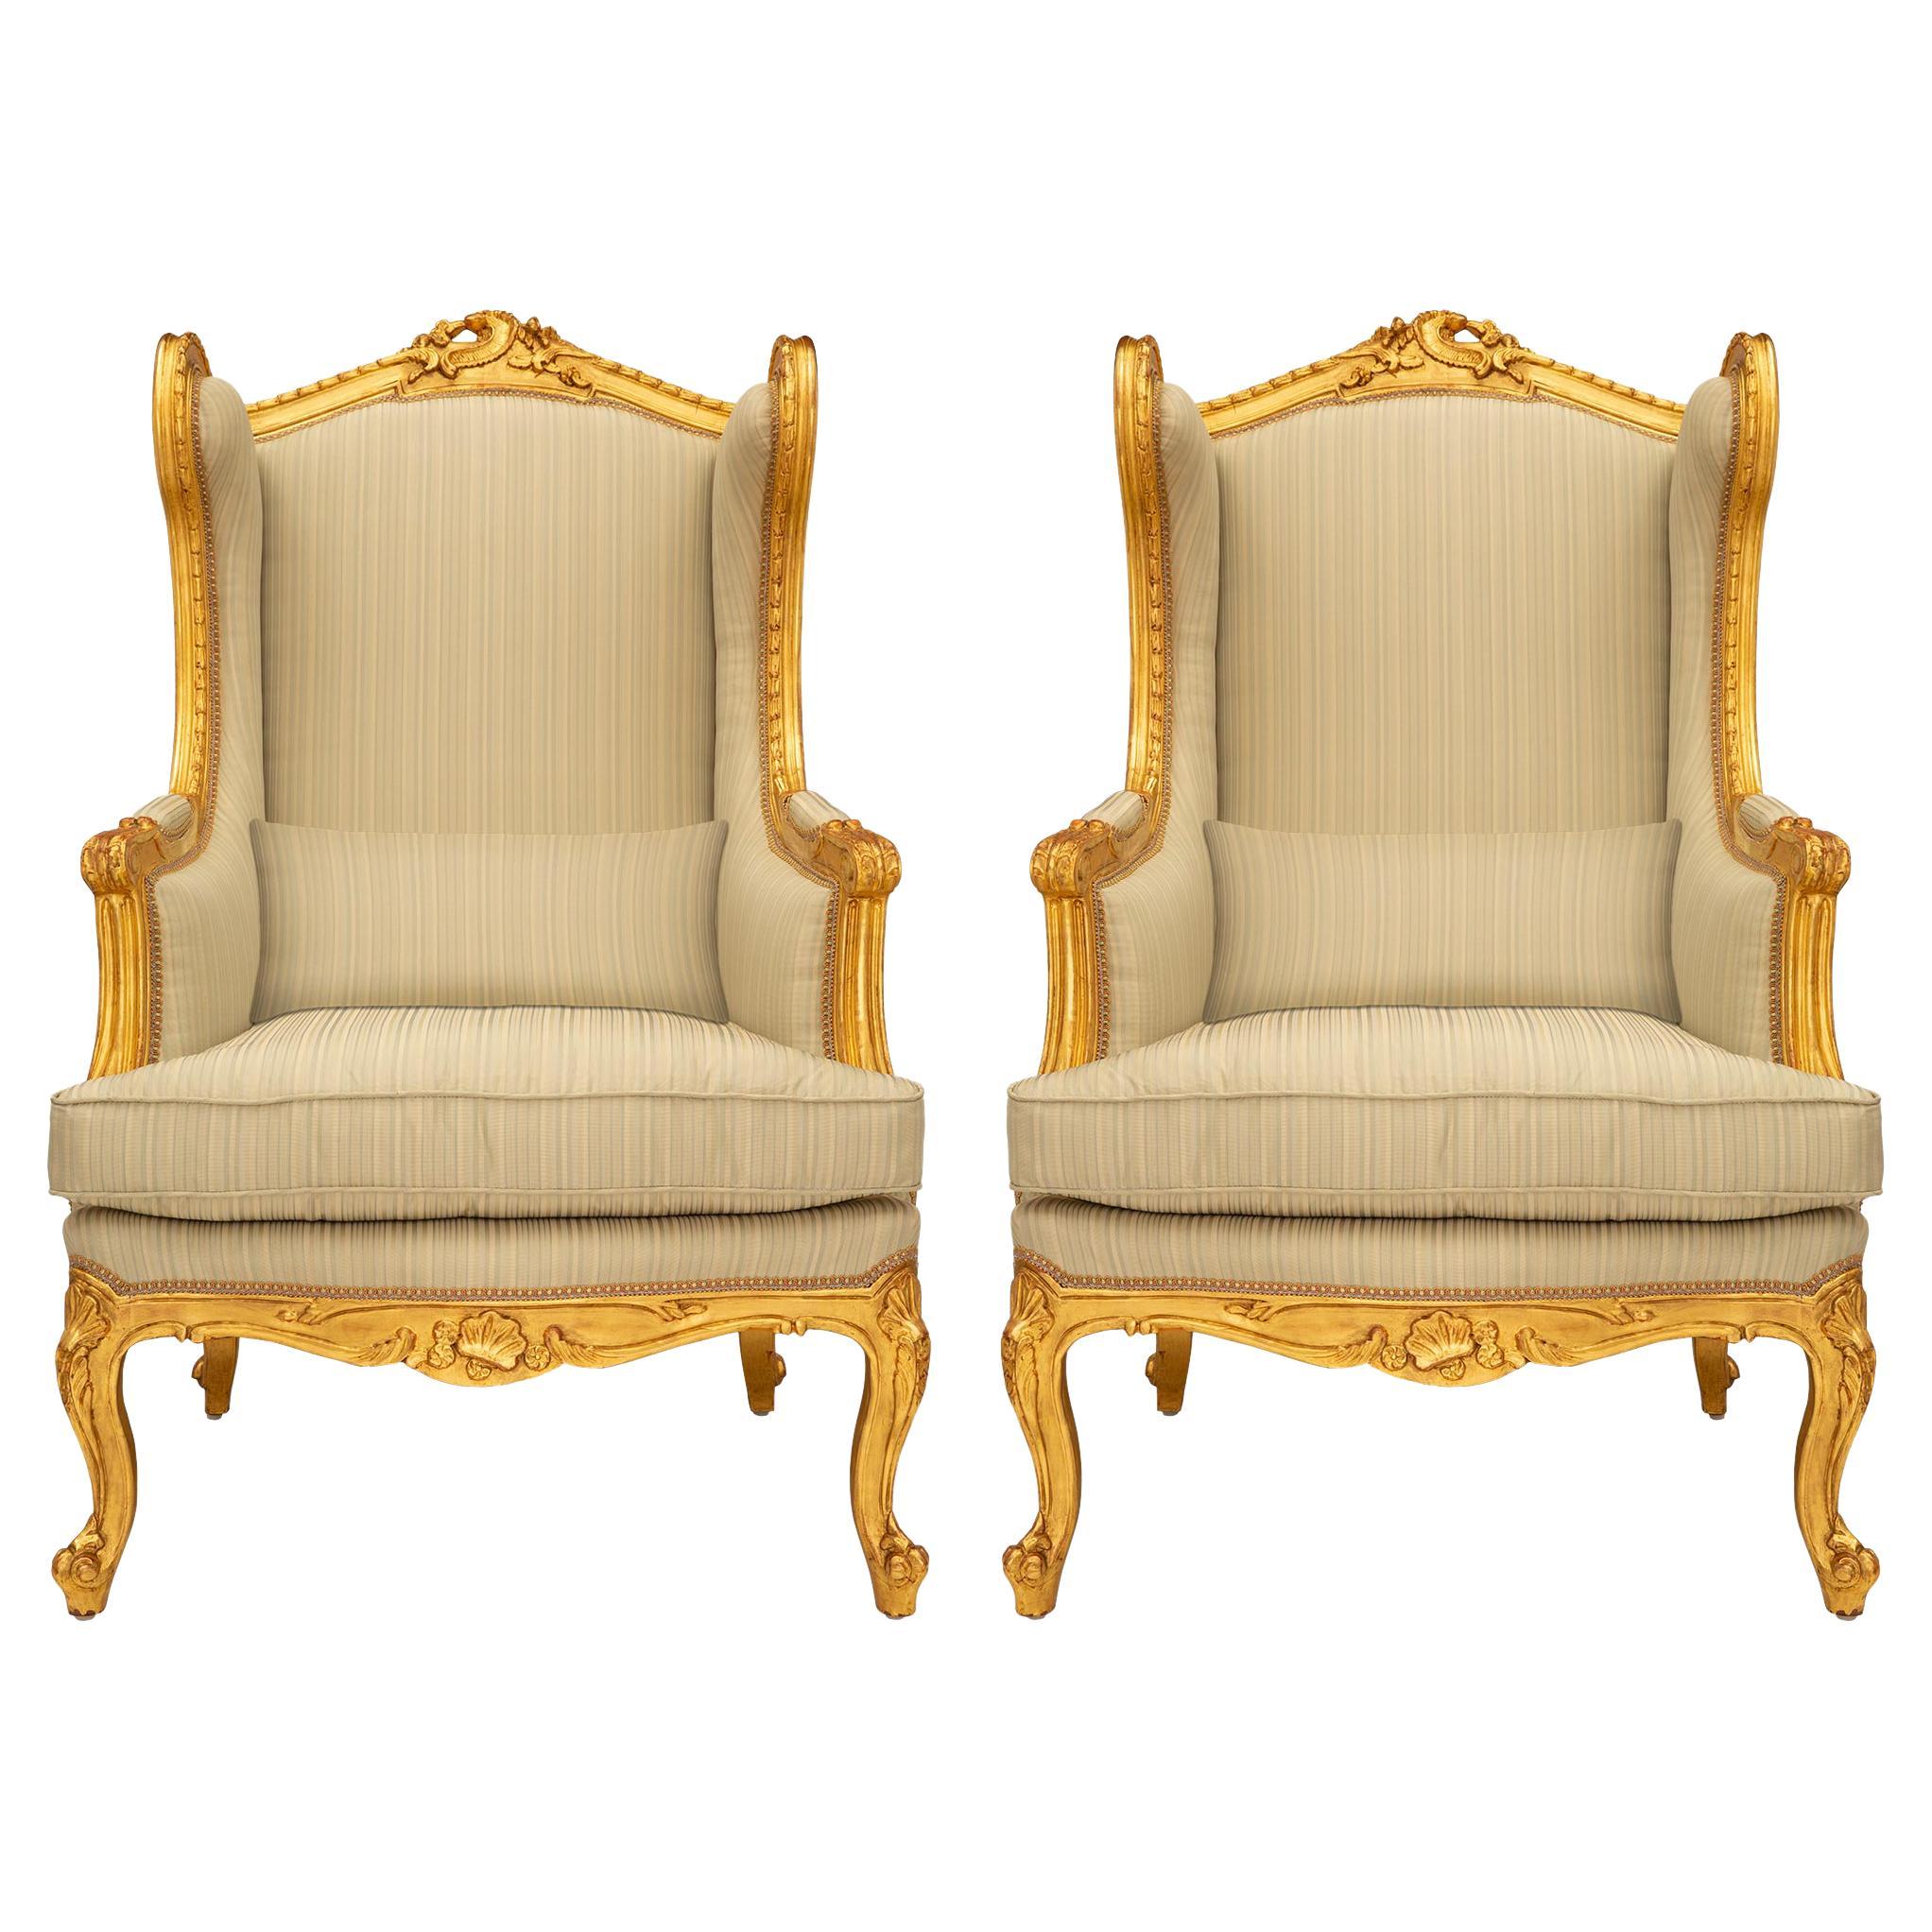 Paire de fauteuils Bergres Oreilles en bois doré de style Louis XV du 19ème siècle français